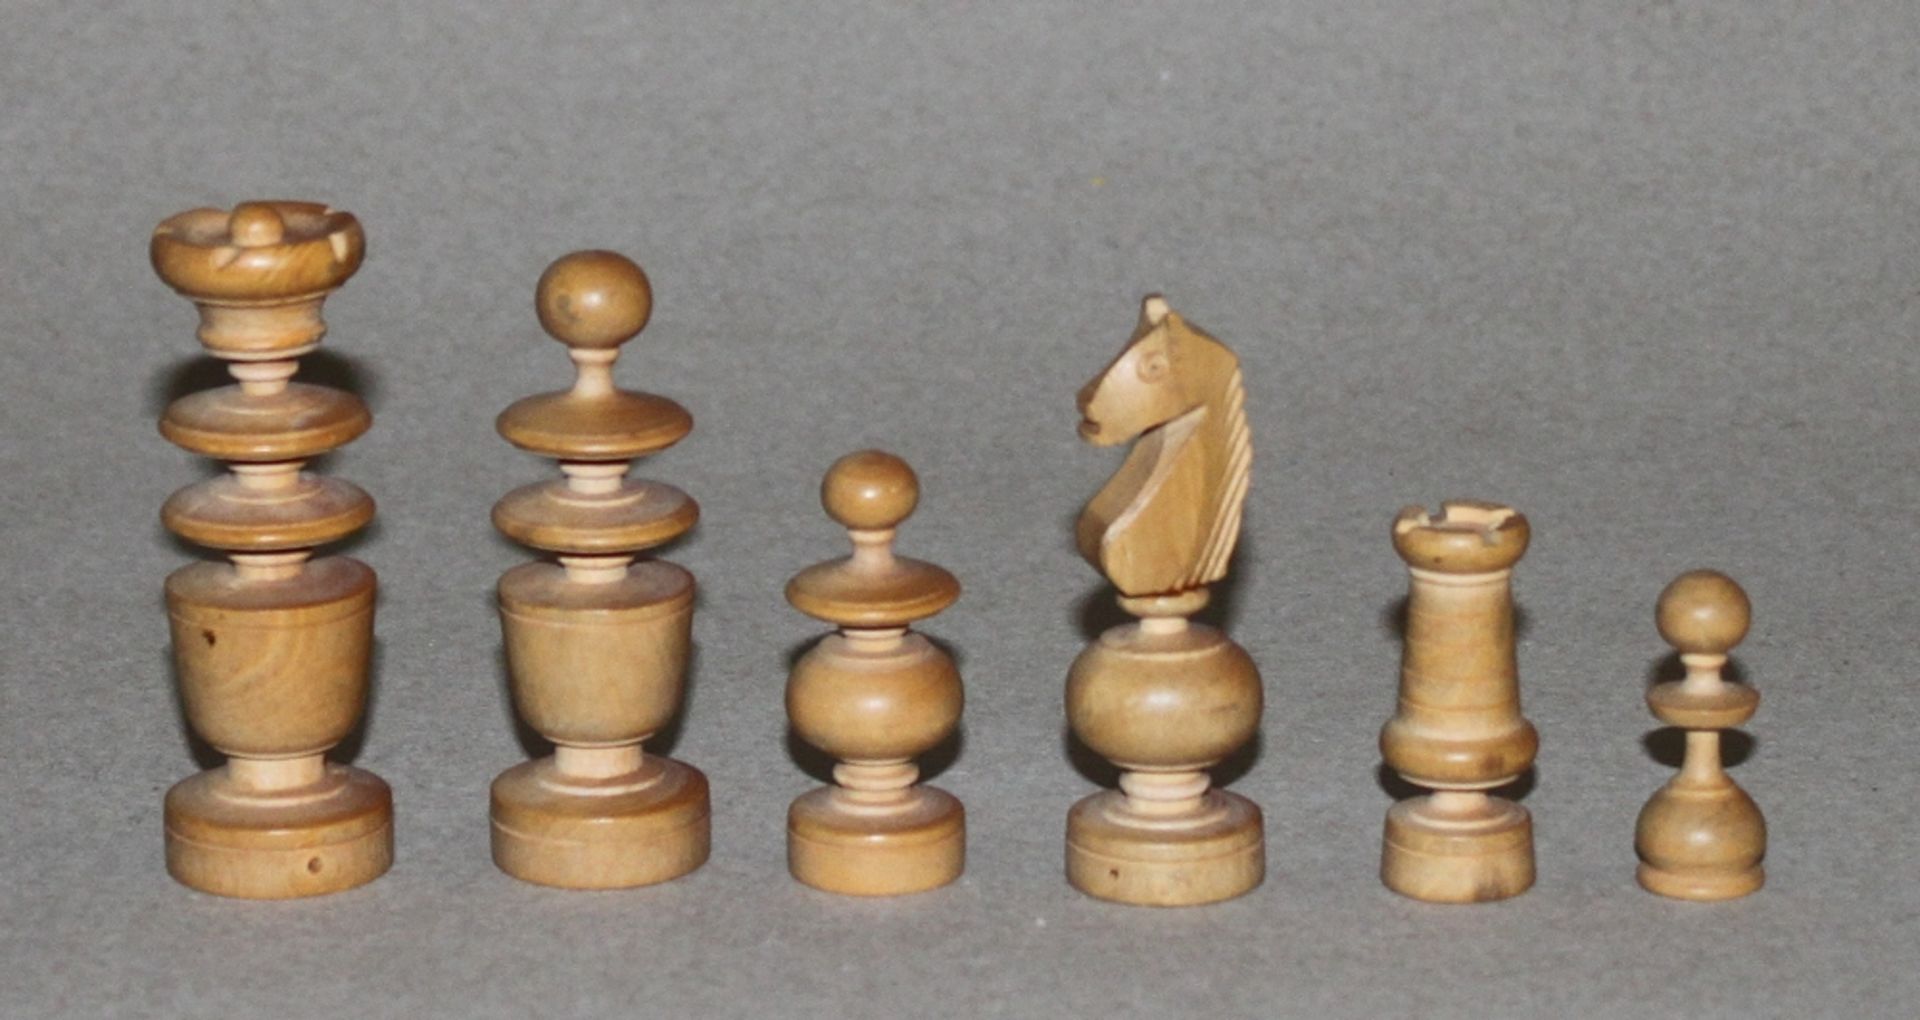 Europa. Schachfiguren aus Holz im Régence - Stil. Eine Partei in schwarz, die andere in naturfarben. - Bild 2 aus 3